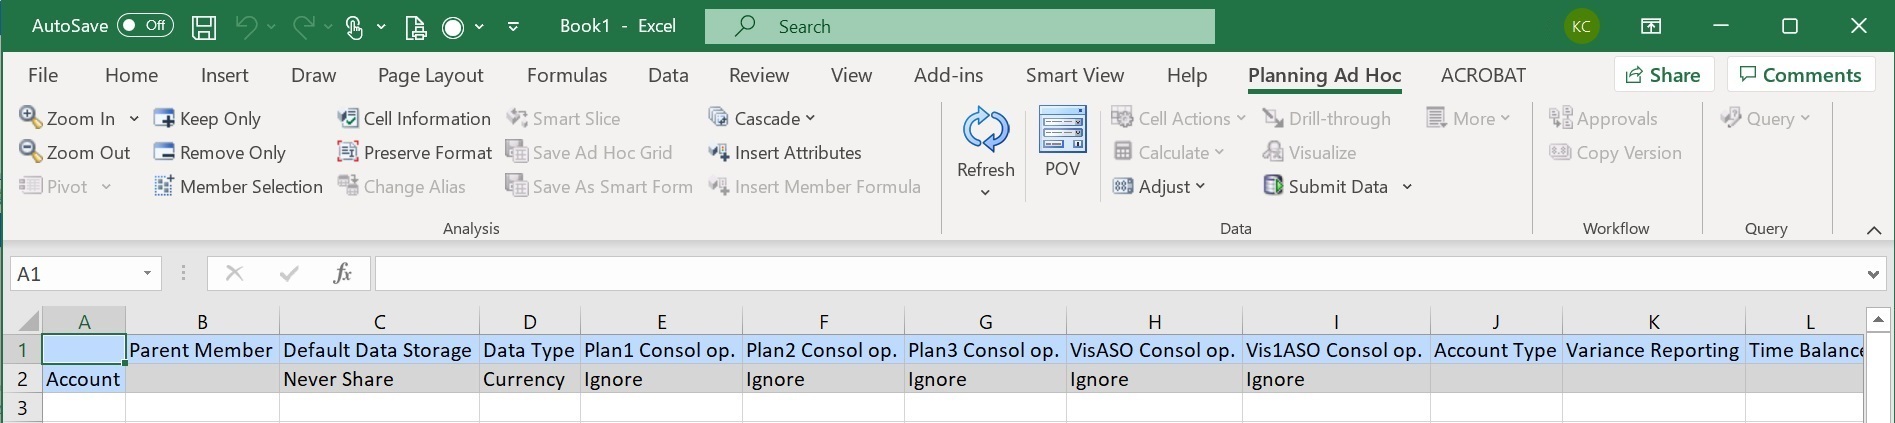 显示一个 Excel 工作表，维名称在行位置，维属性在列位置；例如，单元格 C1 是“默认数据存储”属性，单元格 C2 是属性设置“从不共享”。将维导入网格中时，将显示“Planning 即席”功能区。